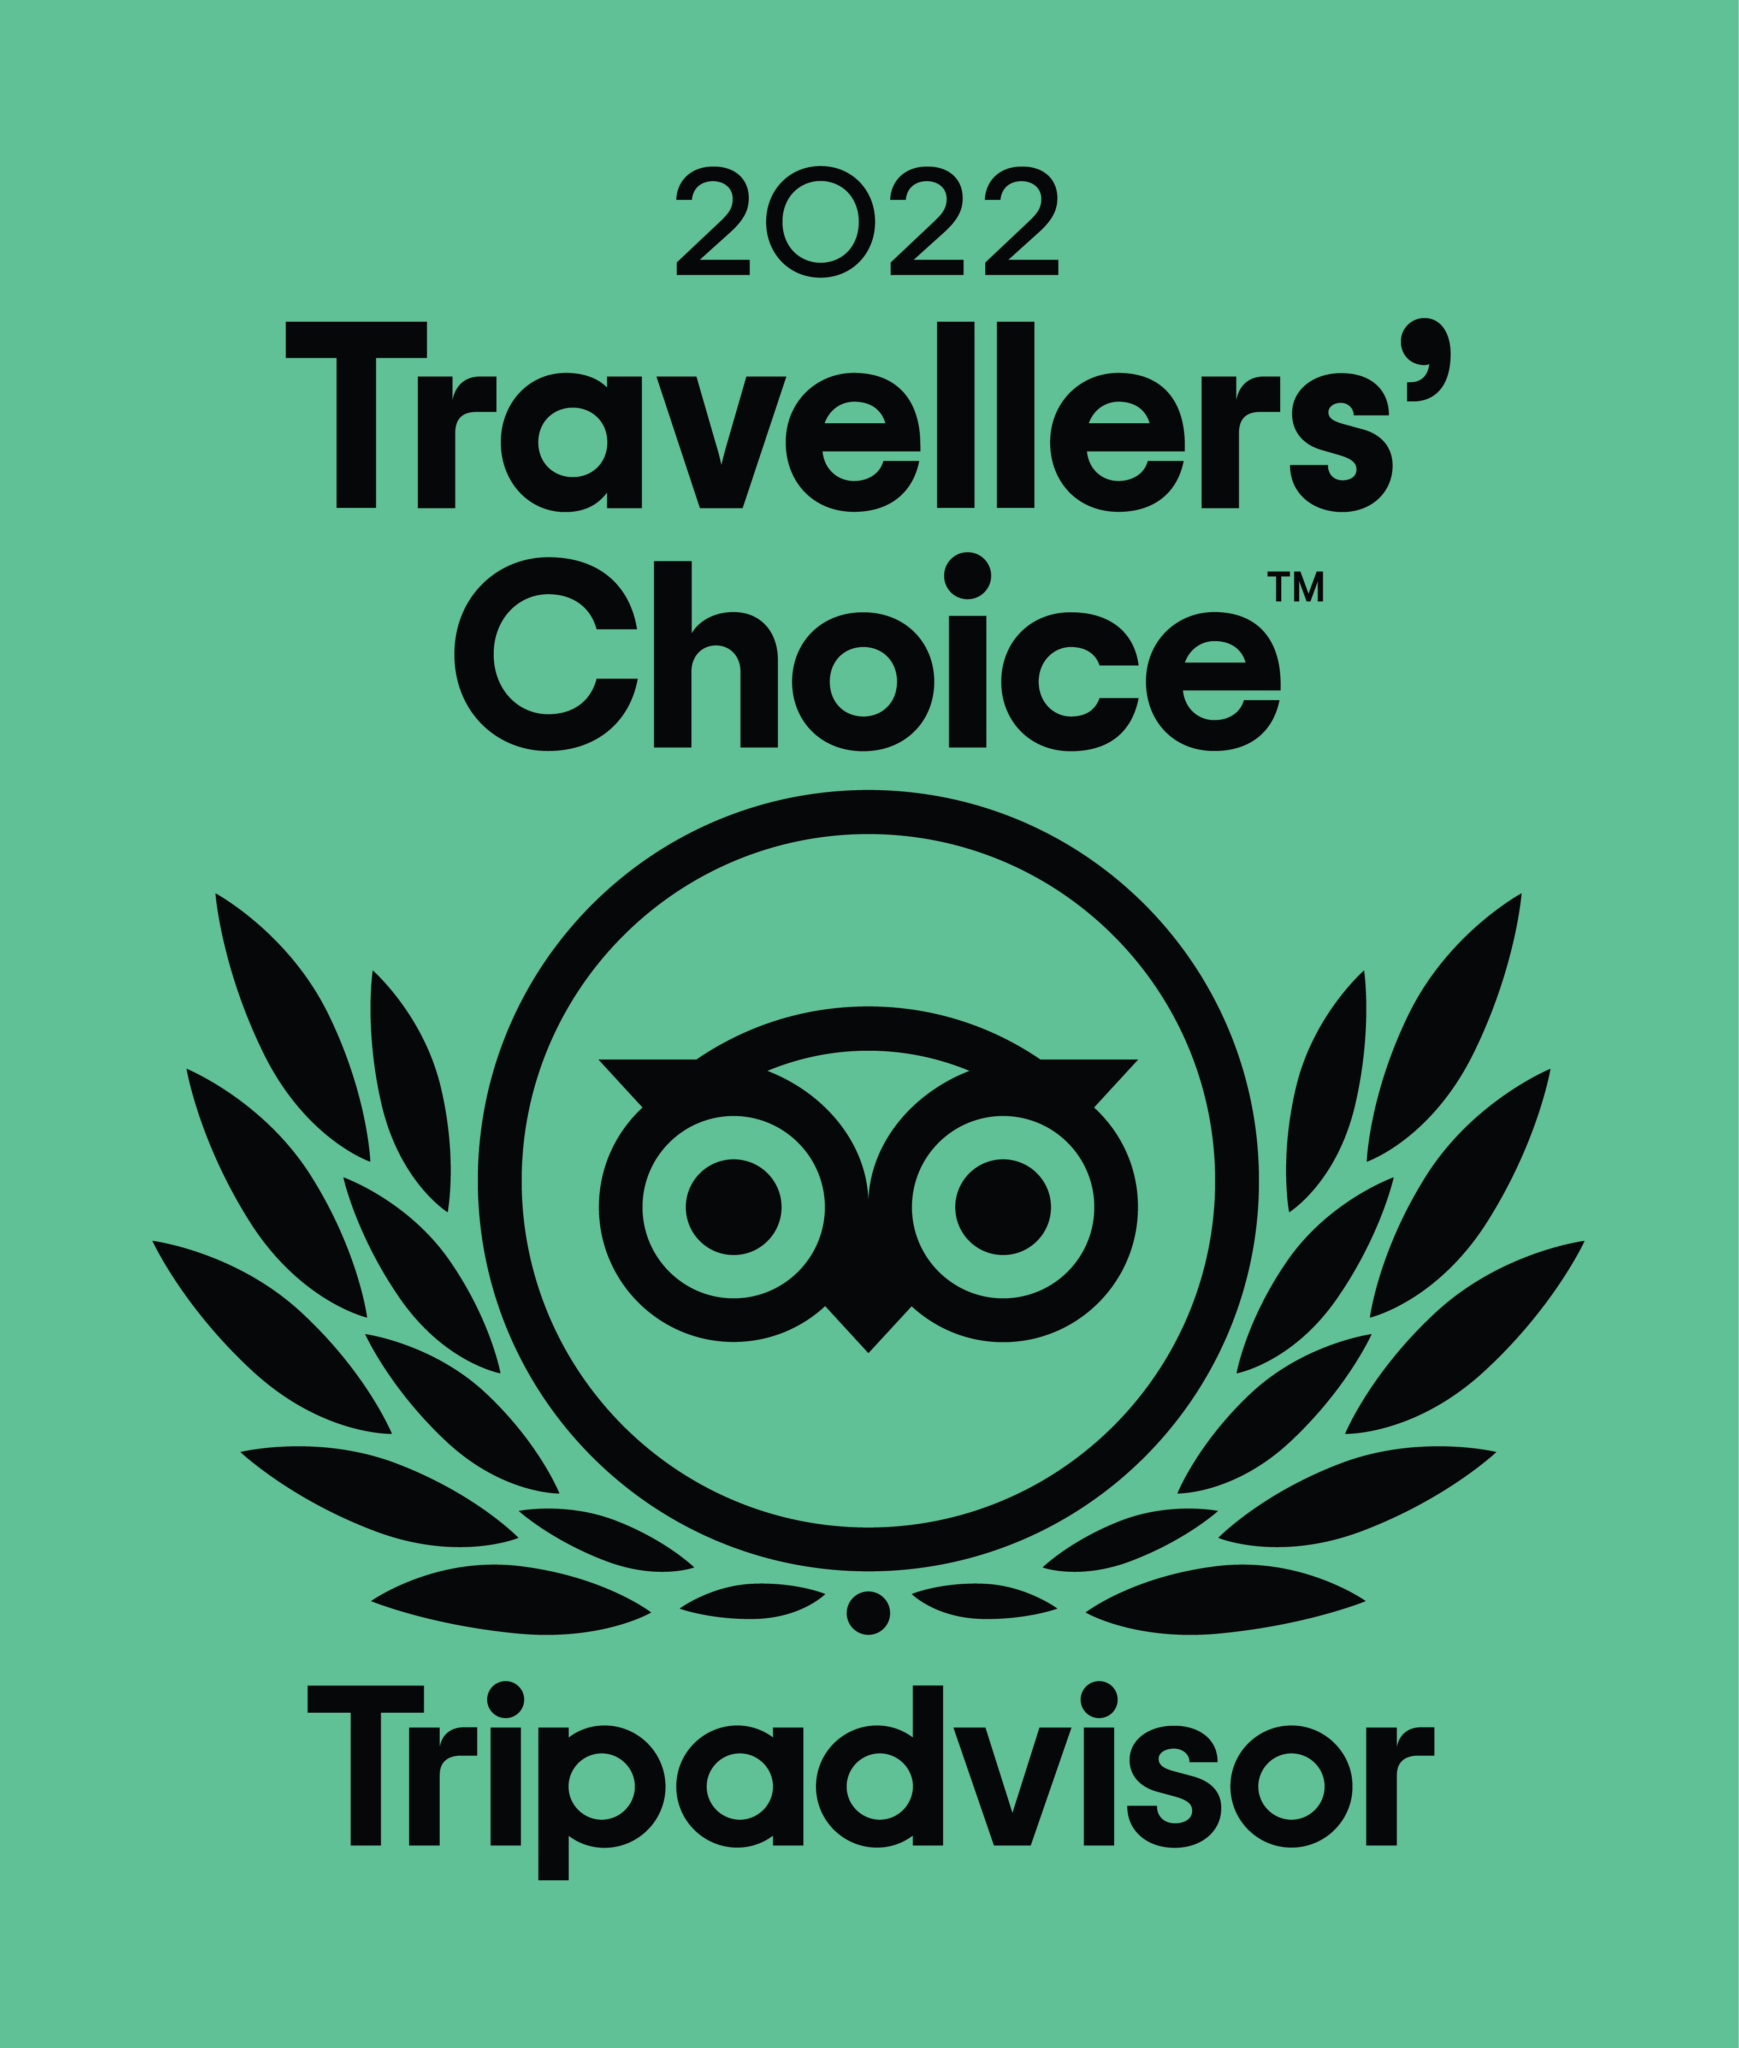 2022 Tripadvisor Travellers’ Choice